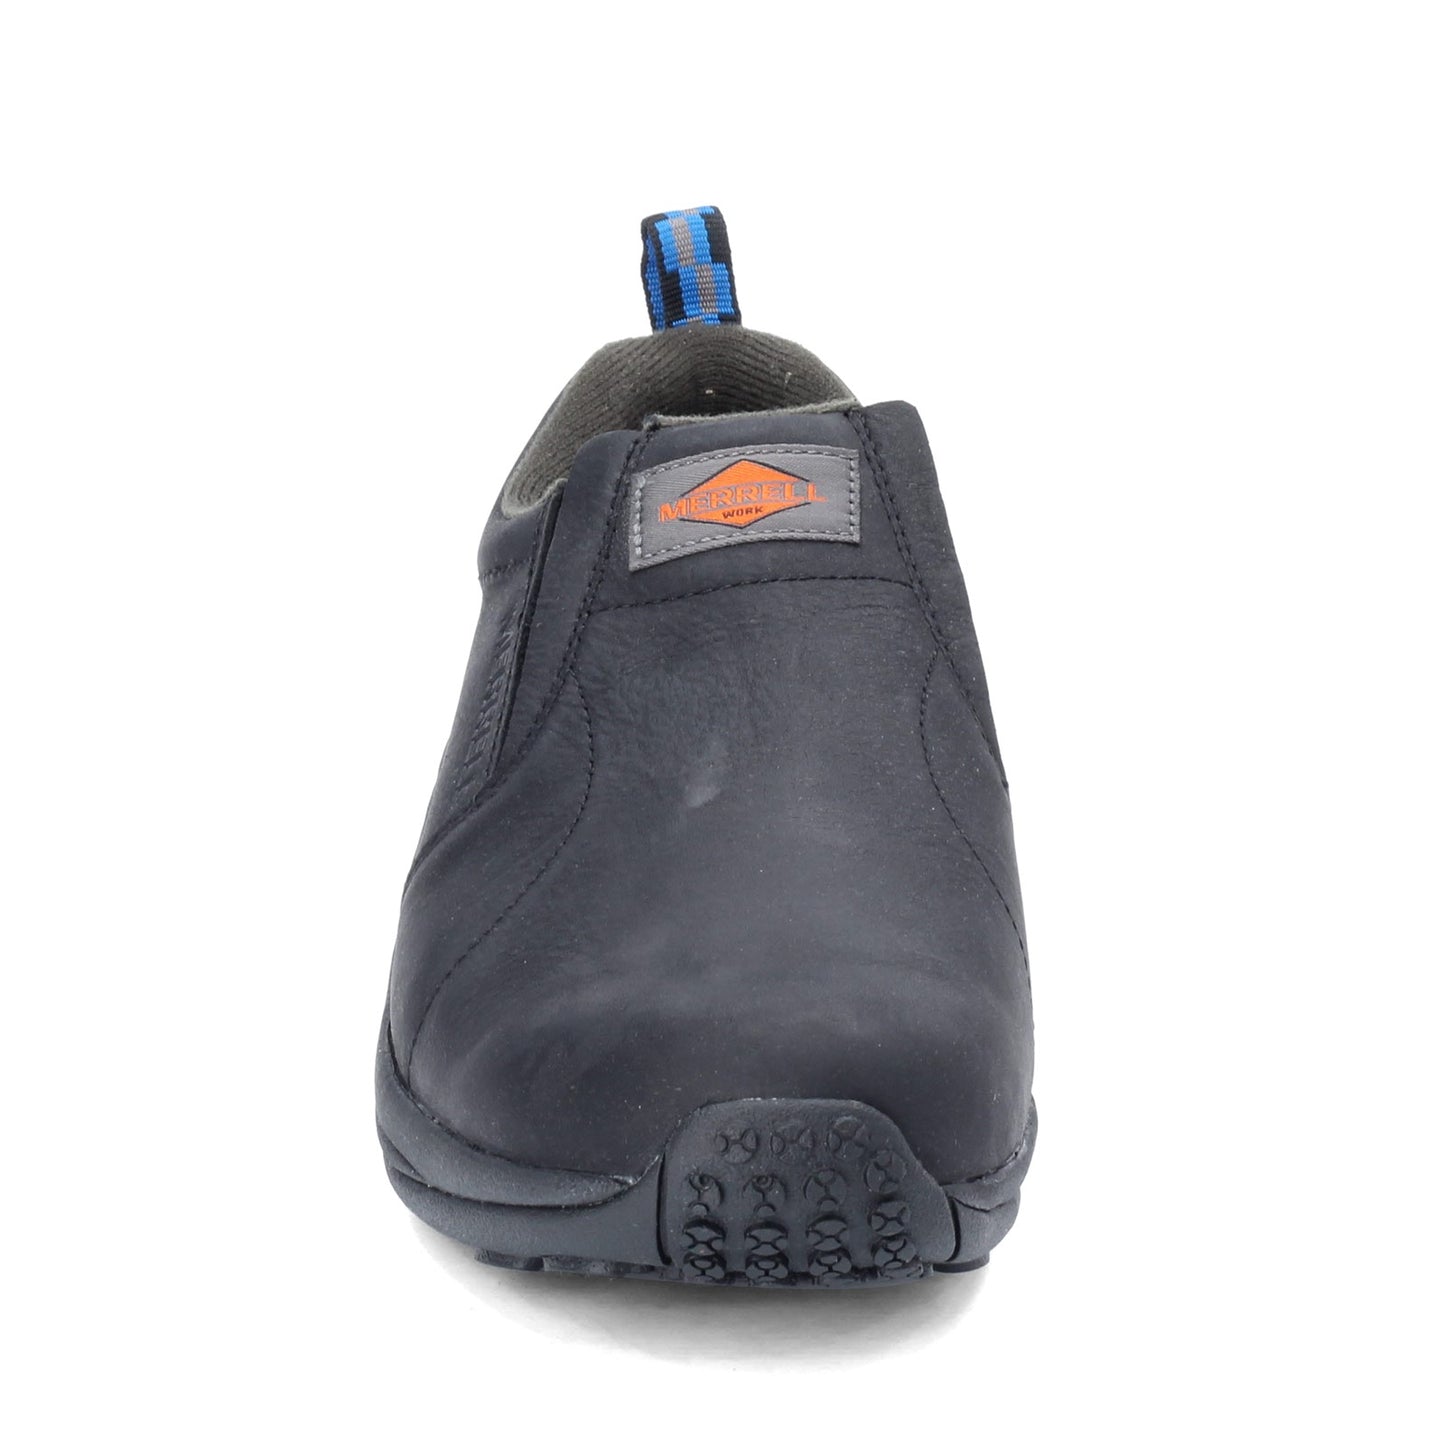 Peltz Shoes  Men's Merrell Jungle Moc Leather SR Work Shoe - Wide Width BLACK J099321W